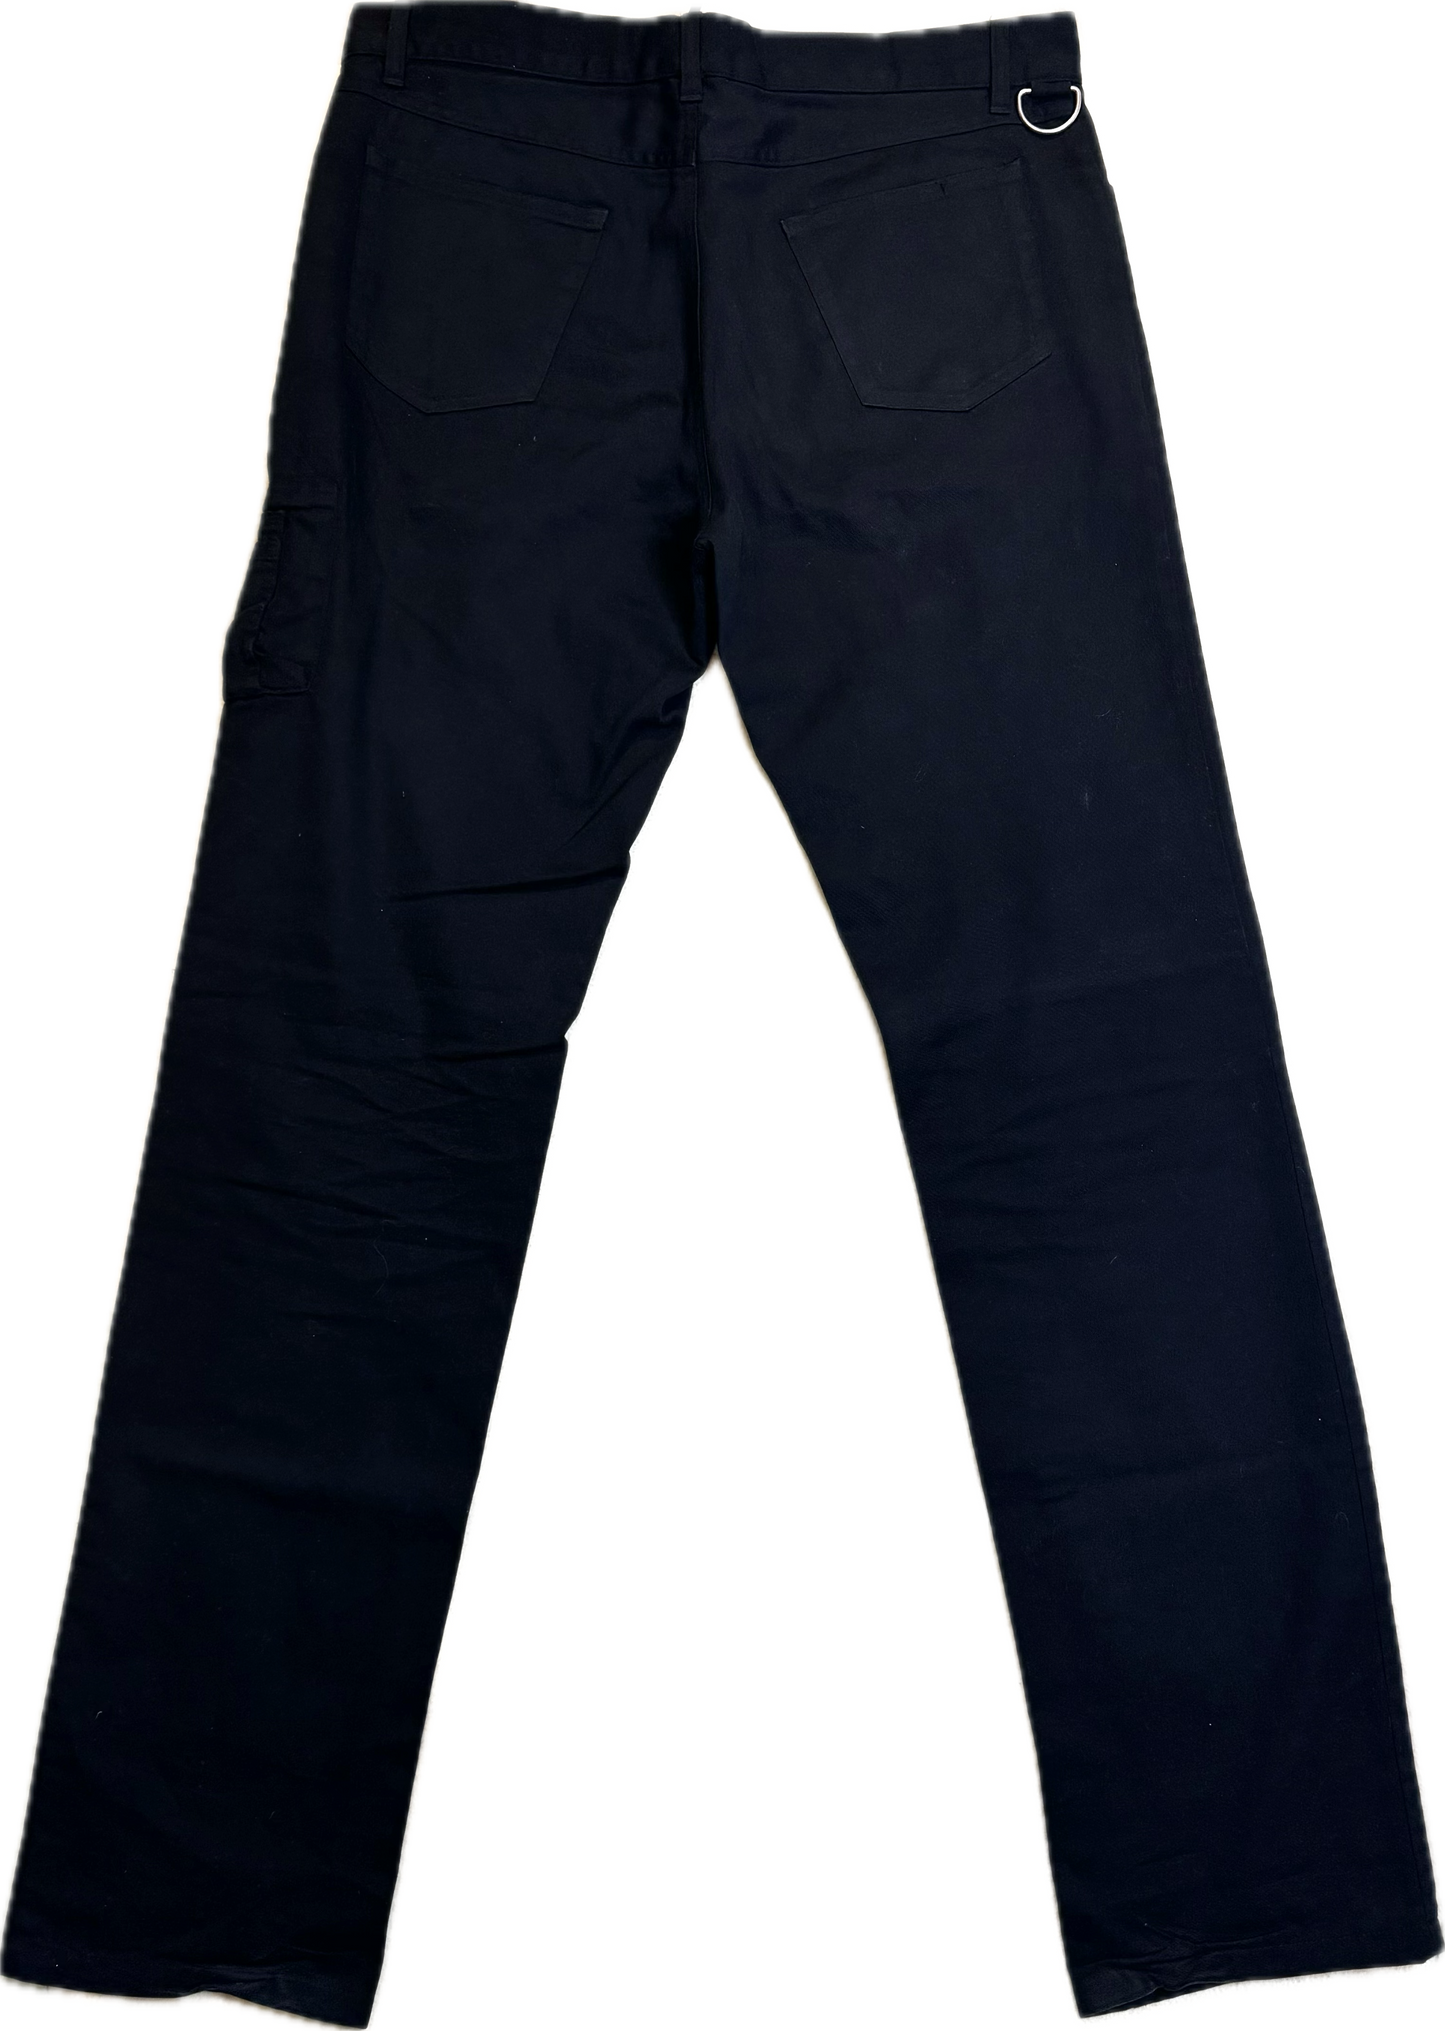 Raf Simons AW 2001 Cargo Pocket Pants